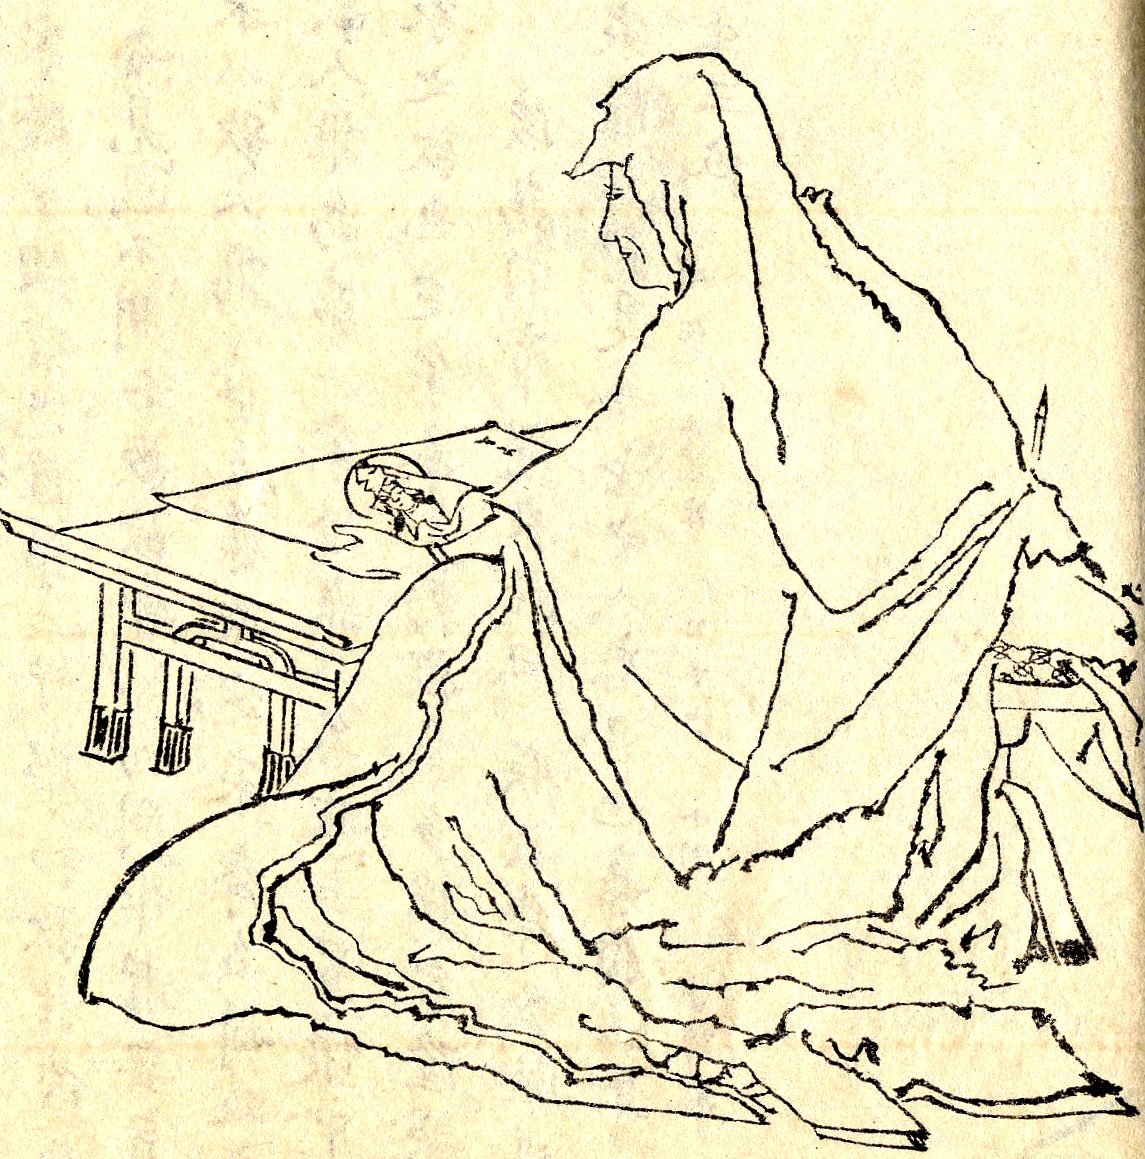 Hōjō Masako